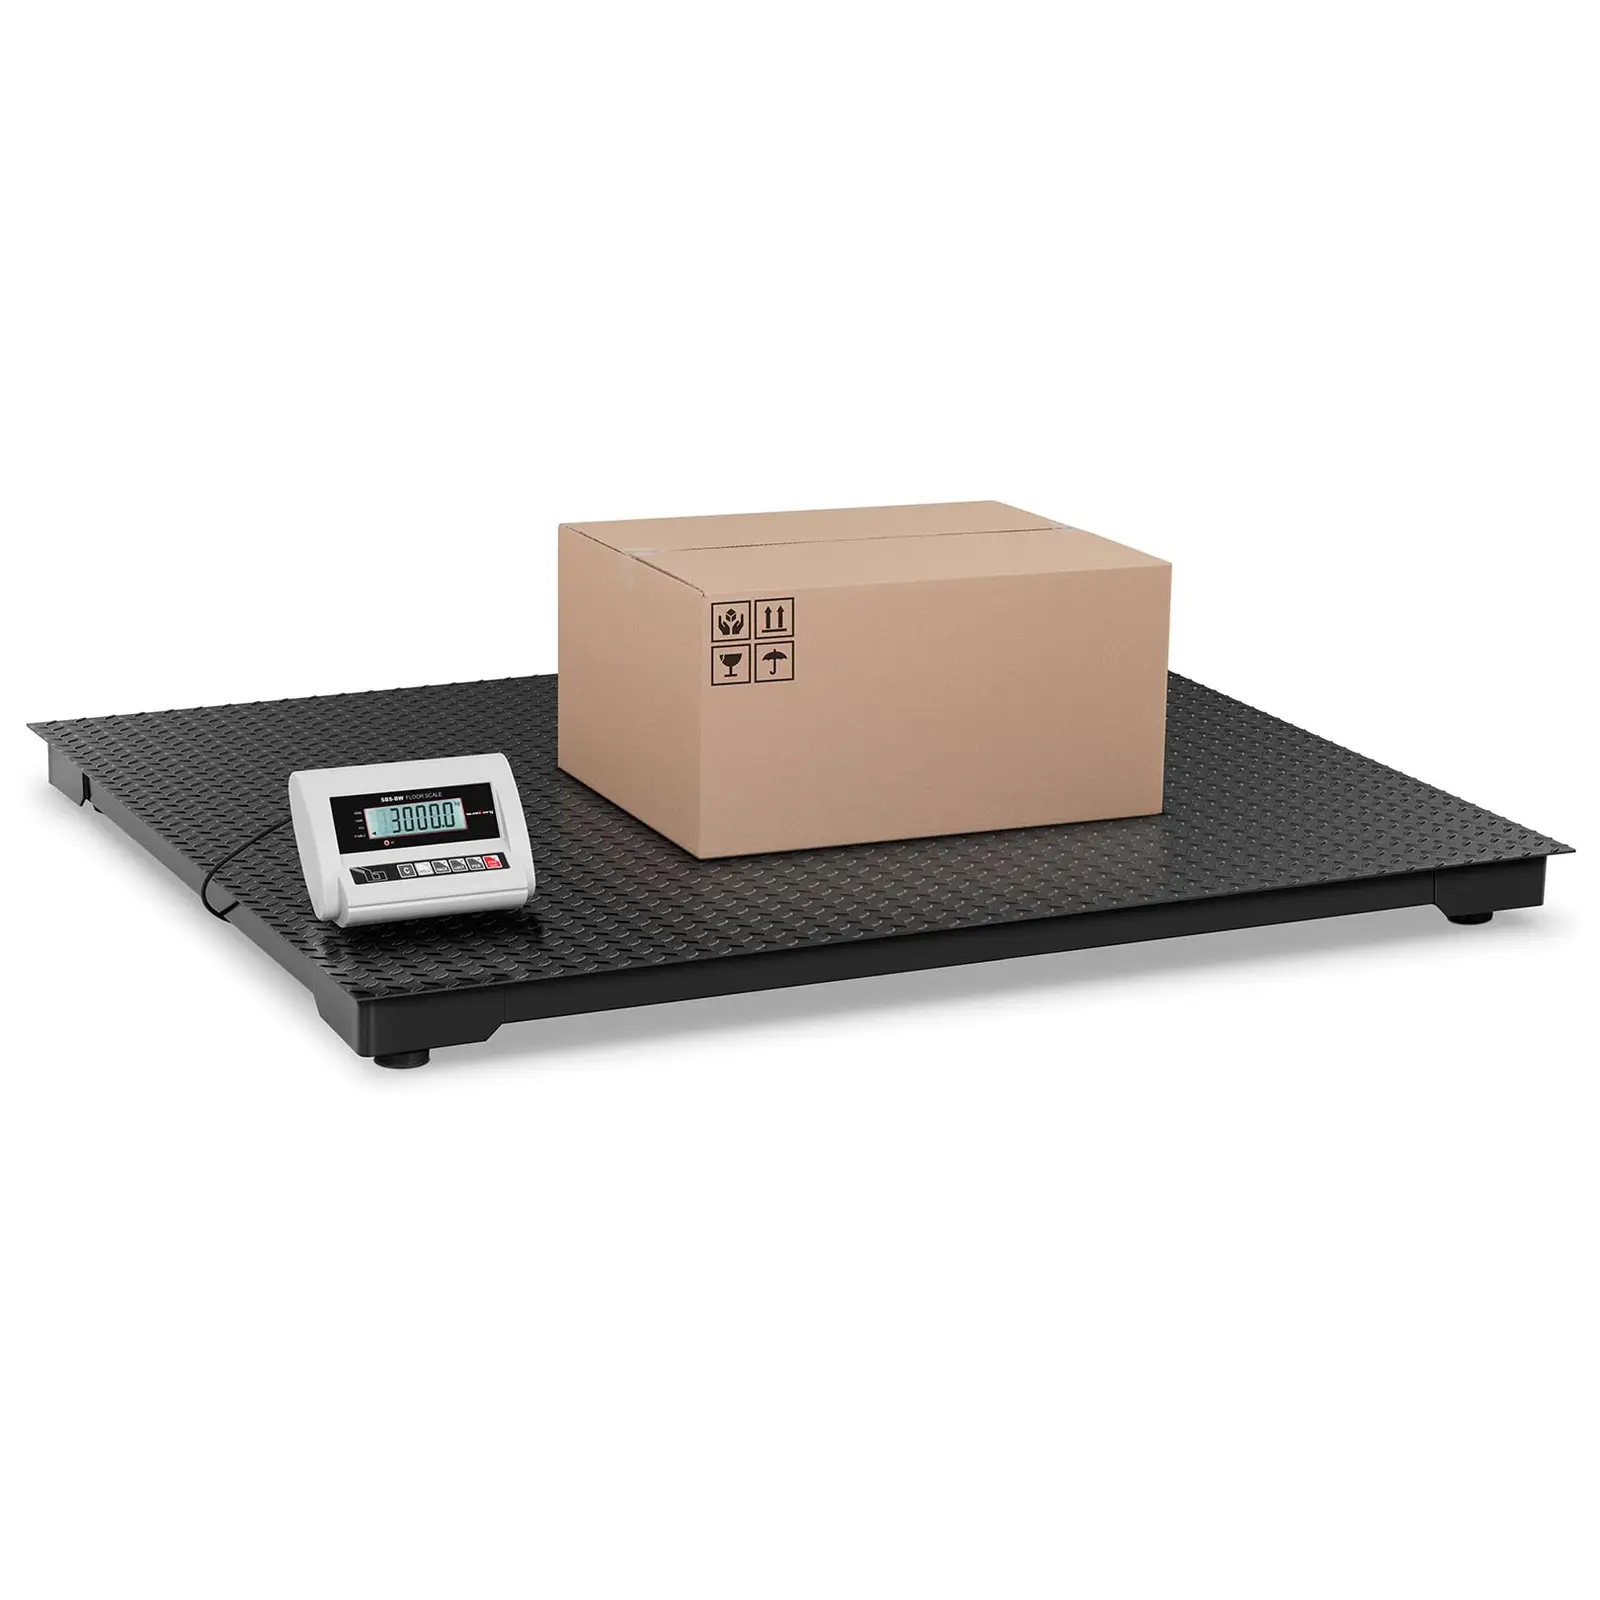 Podlahová váha ECO - 3 000 kg / 1 kg - LCD